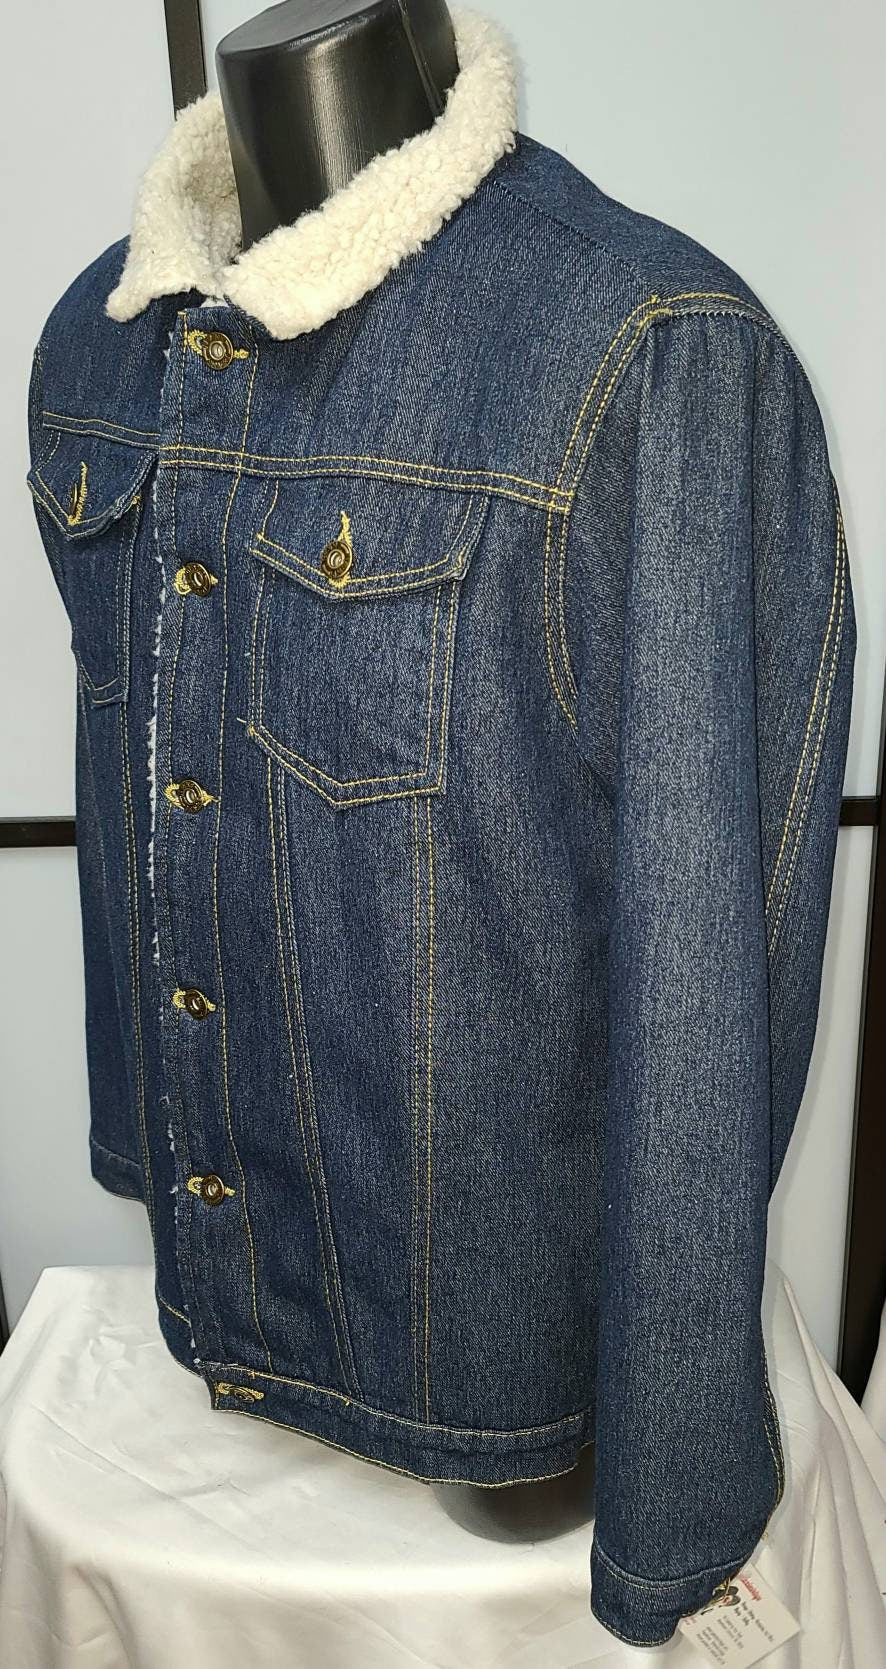 SALE Vintage Men's Jacket Lightweight Dk Blue Denim Jacket White Fuzzy Fleece Lining Boho Streetwear Hip Hop S chest 40 in.